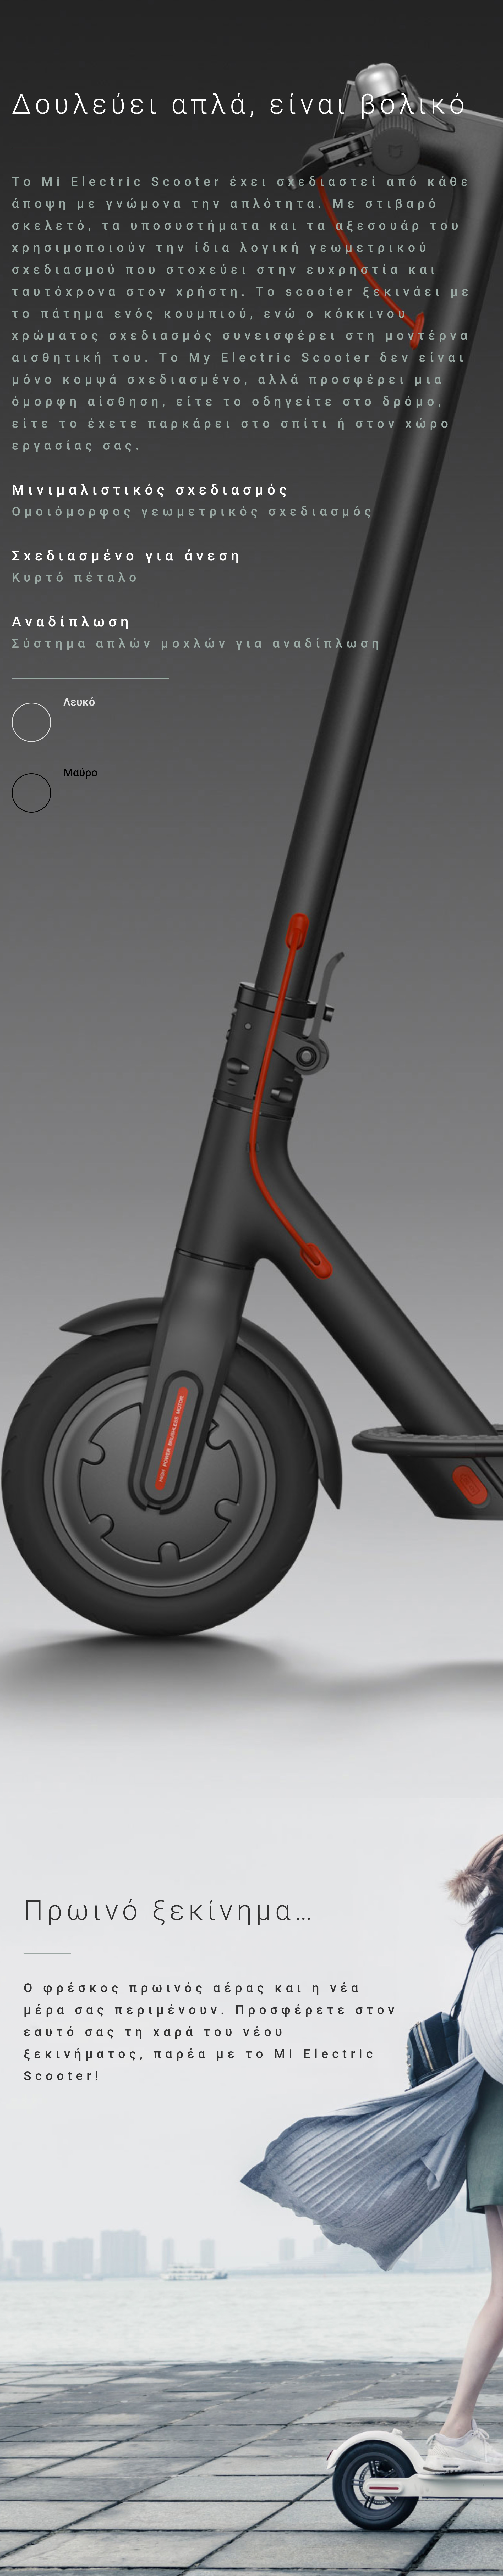 Ηλεκτρικό Ποδήλατο - Σκούτερ από την Xiaomi